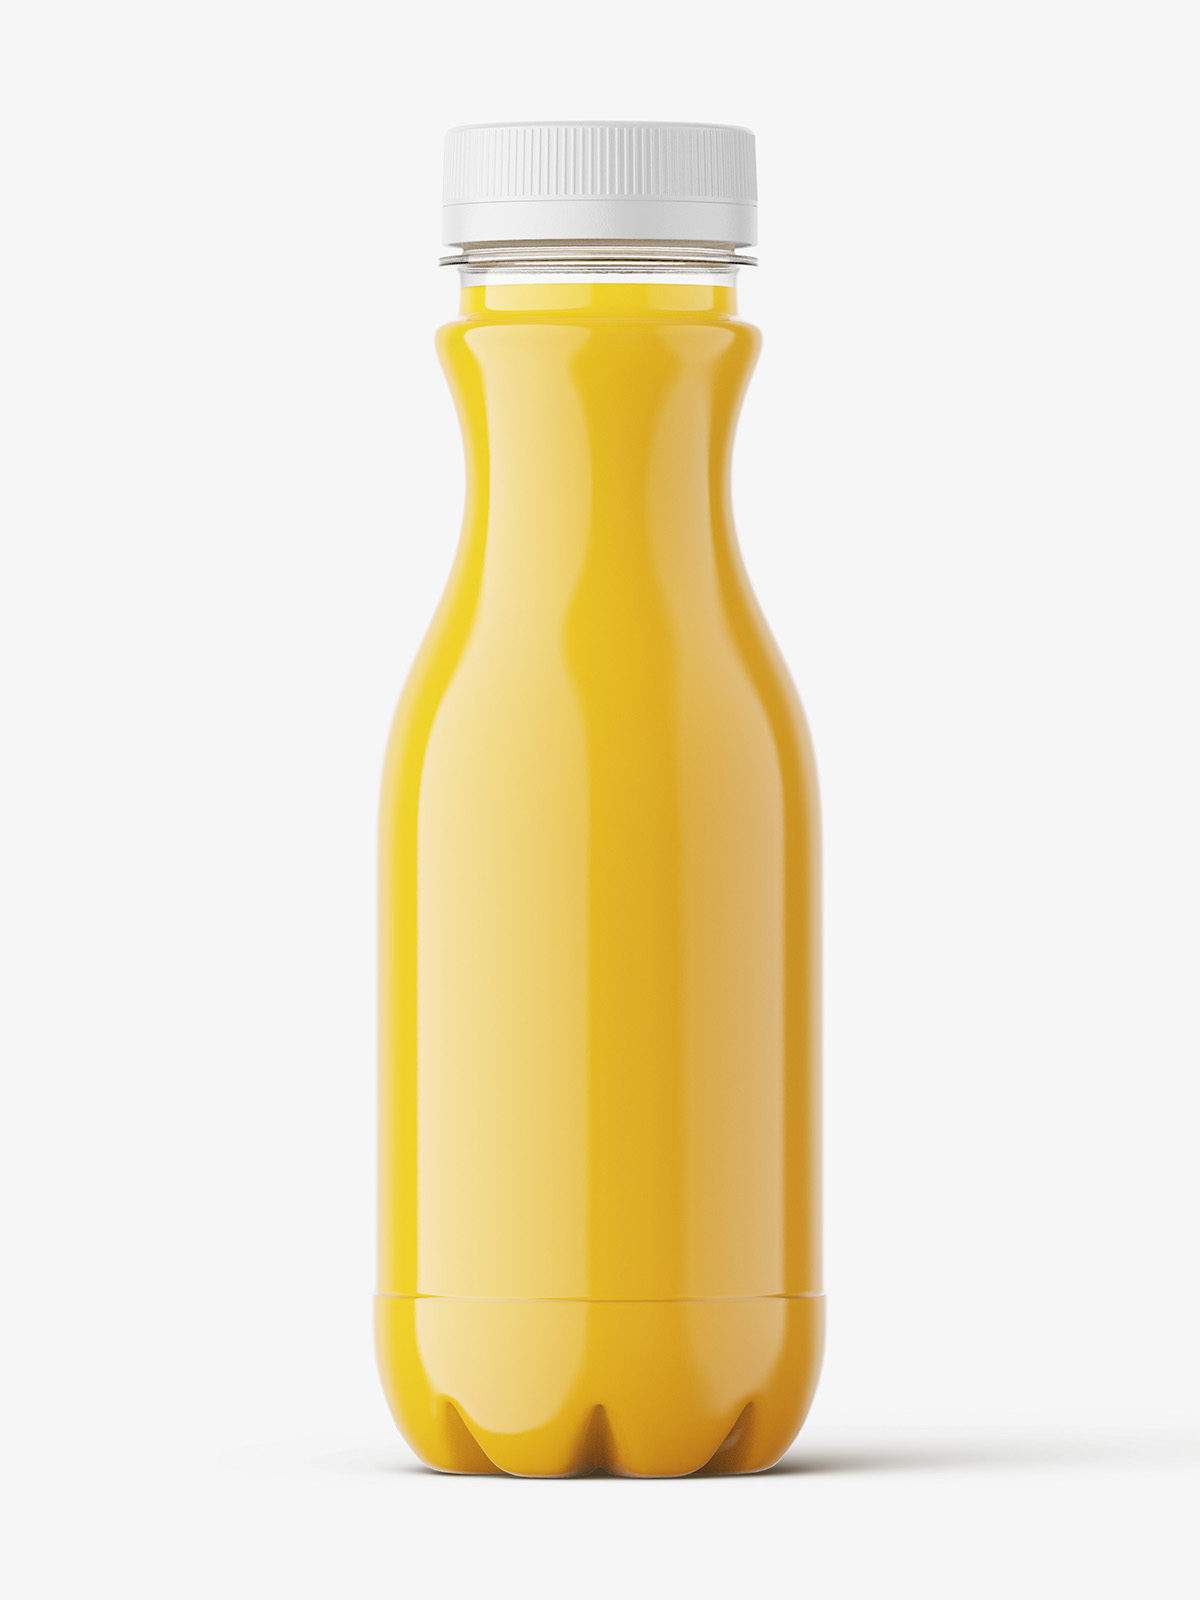 https://smartymockups.com/wp-content/uploads/2016/09/Orange_Juice_Bottle_Mockup_11.jpg